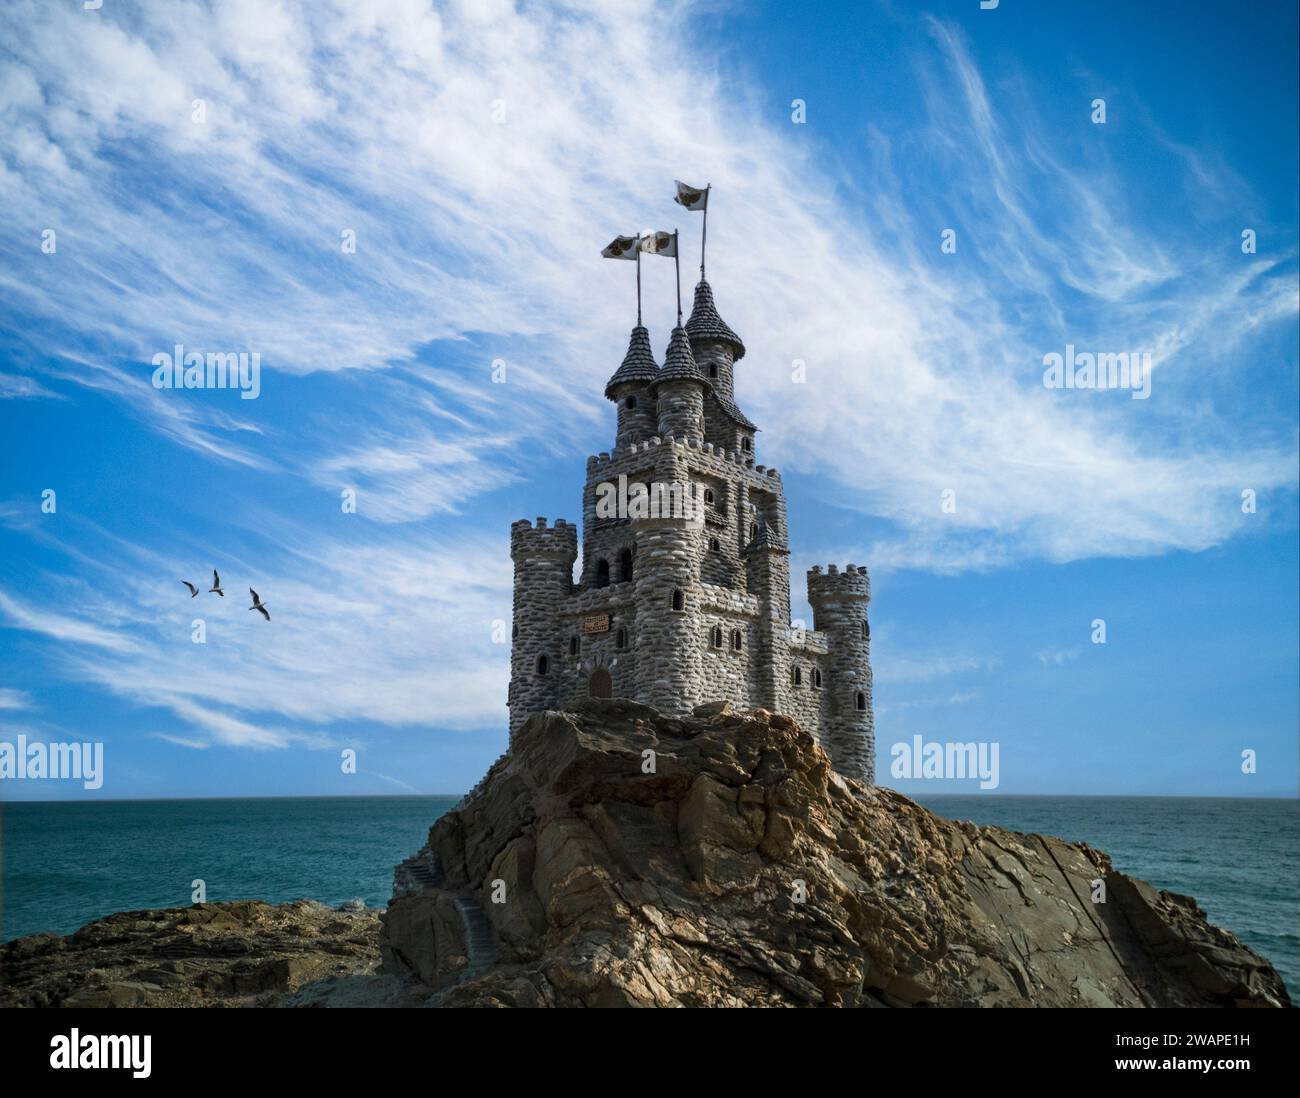 Un modèle de château gothique, construit sur un éperon rocheux au bord de la Méditerranée à Torrox Costa, par Anton Jensen, sculpteur danois vivant dans la province de Malaga Banque D'Images